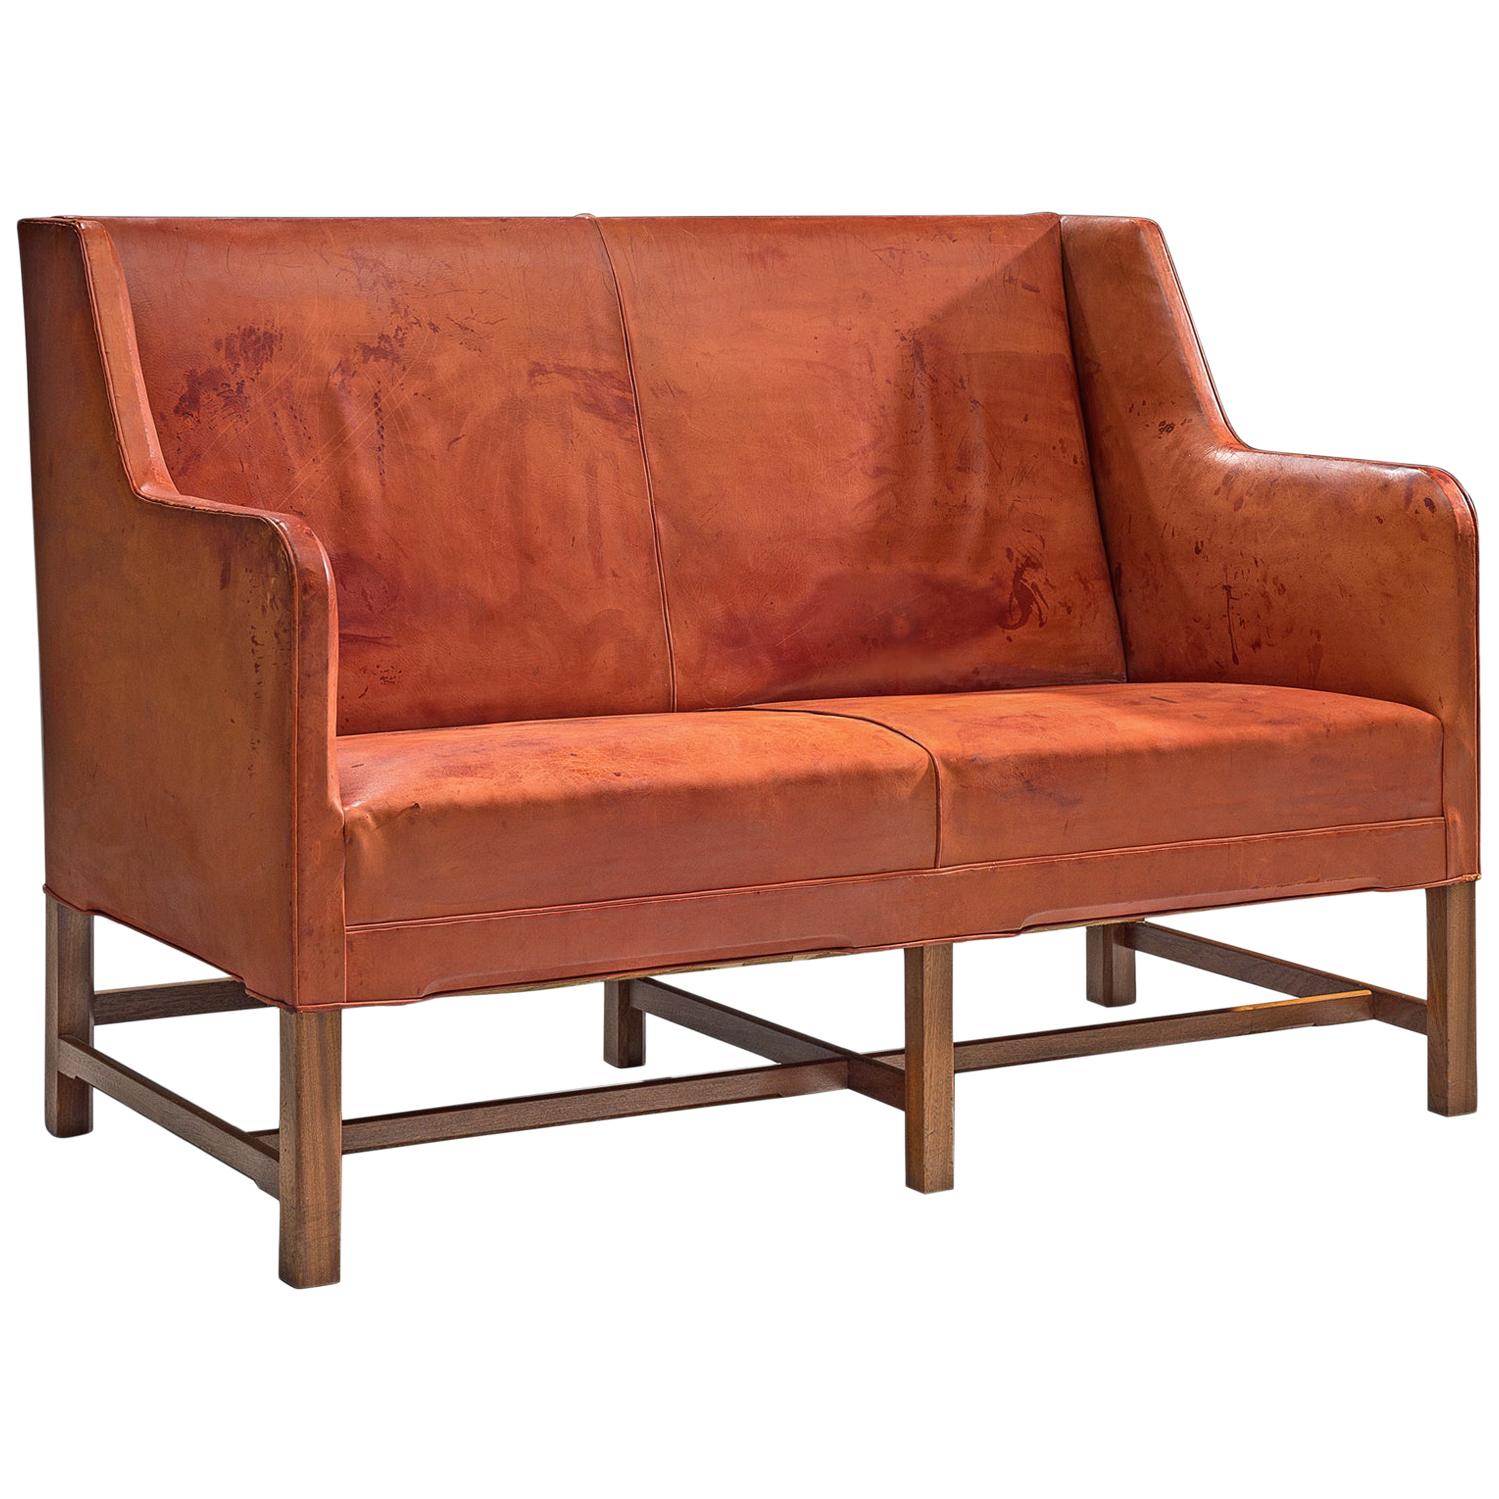 Original Cognac Leather Kaare Klint Sofa for Rud Rasmussen